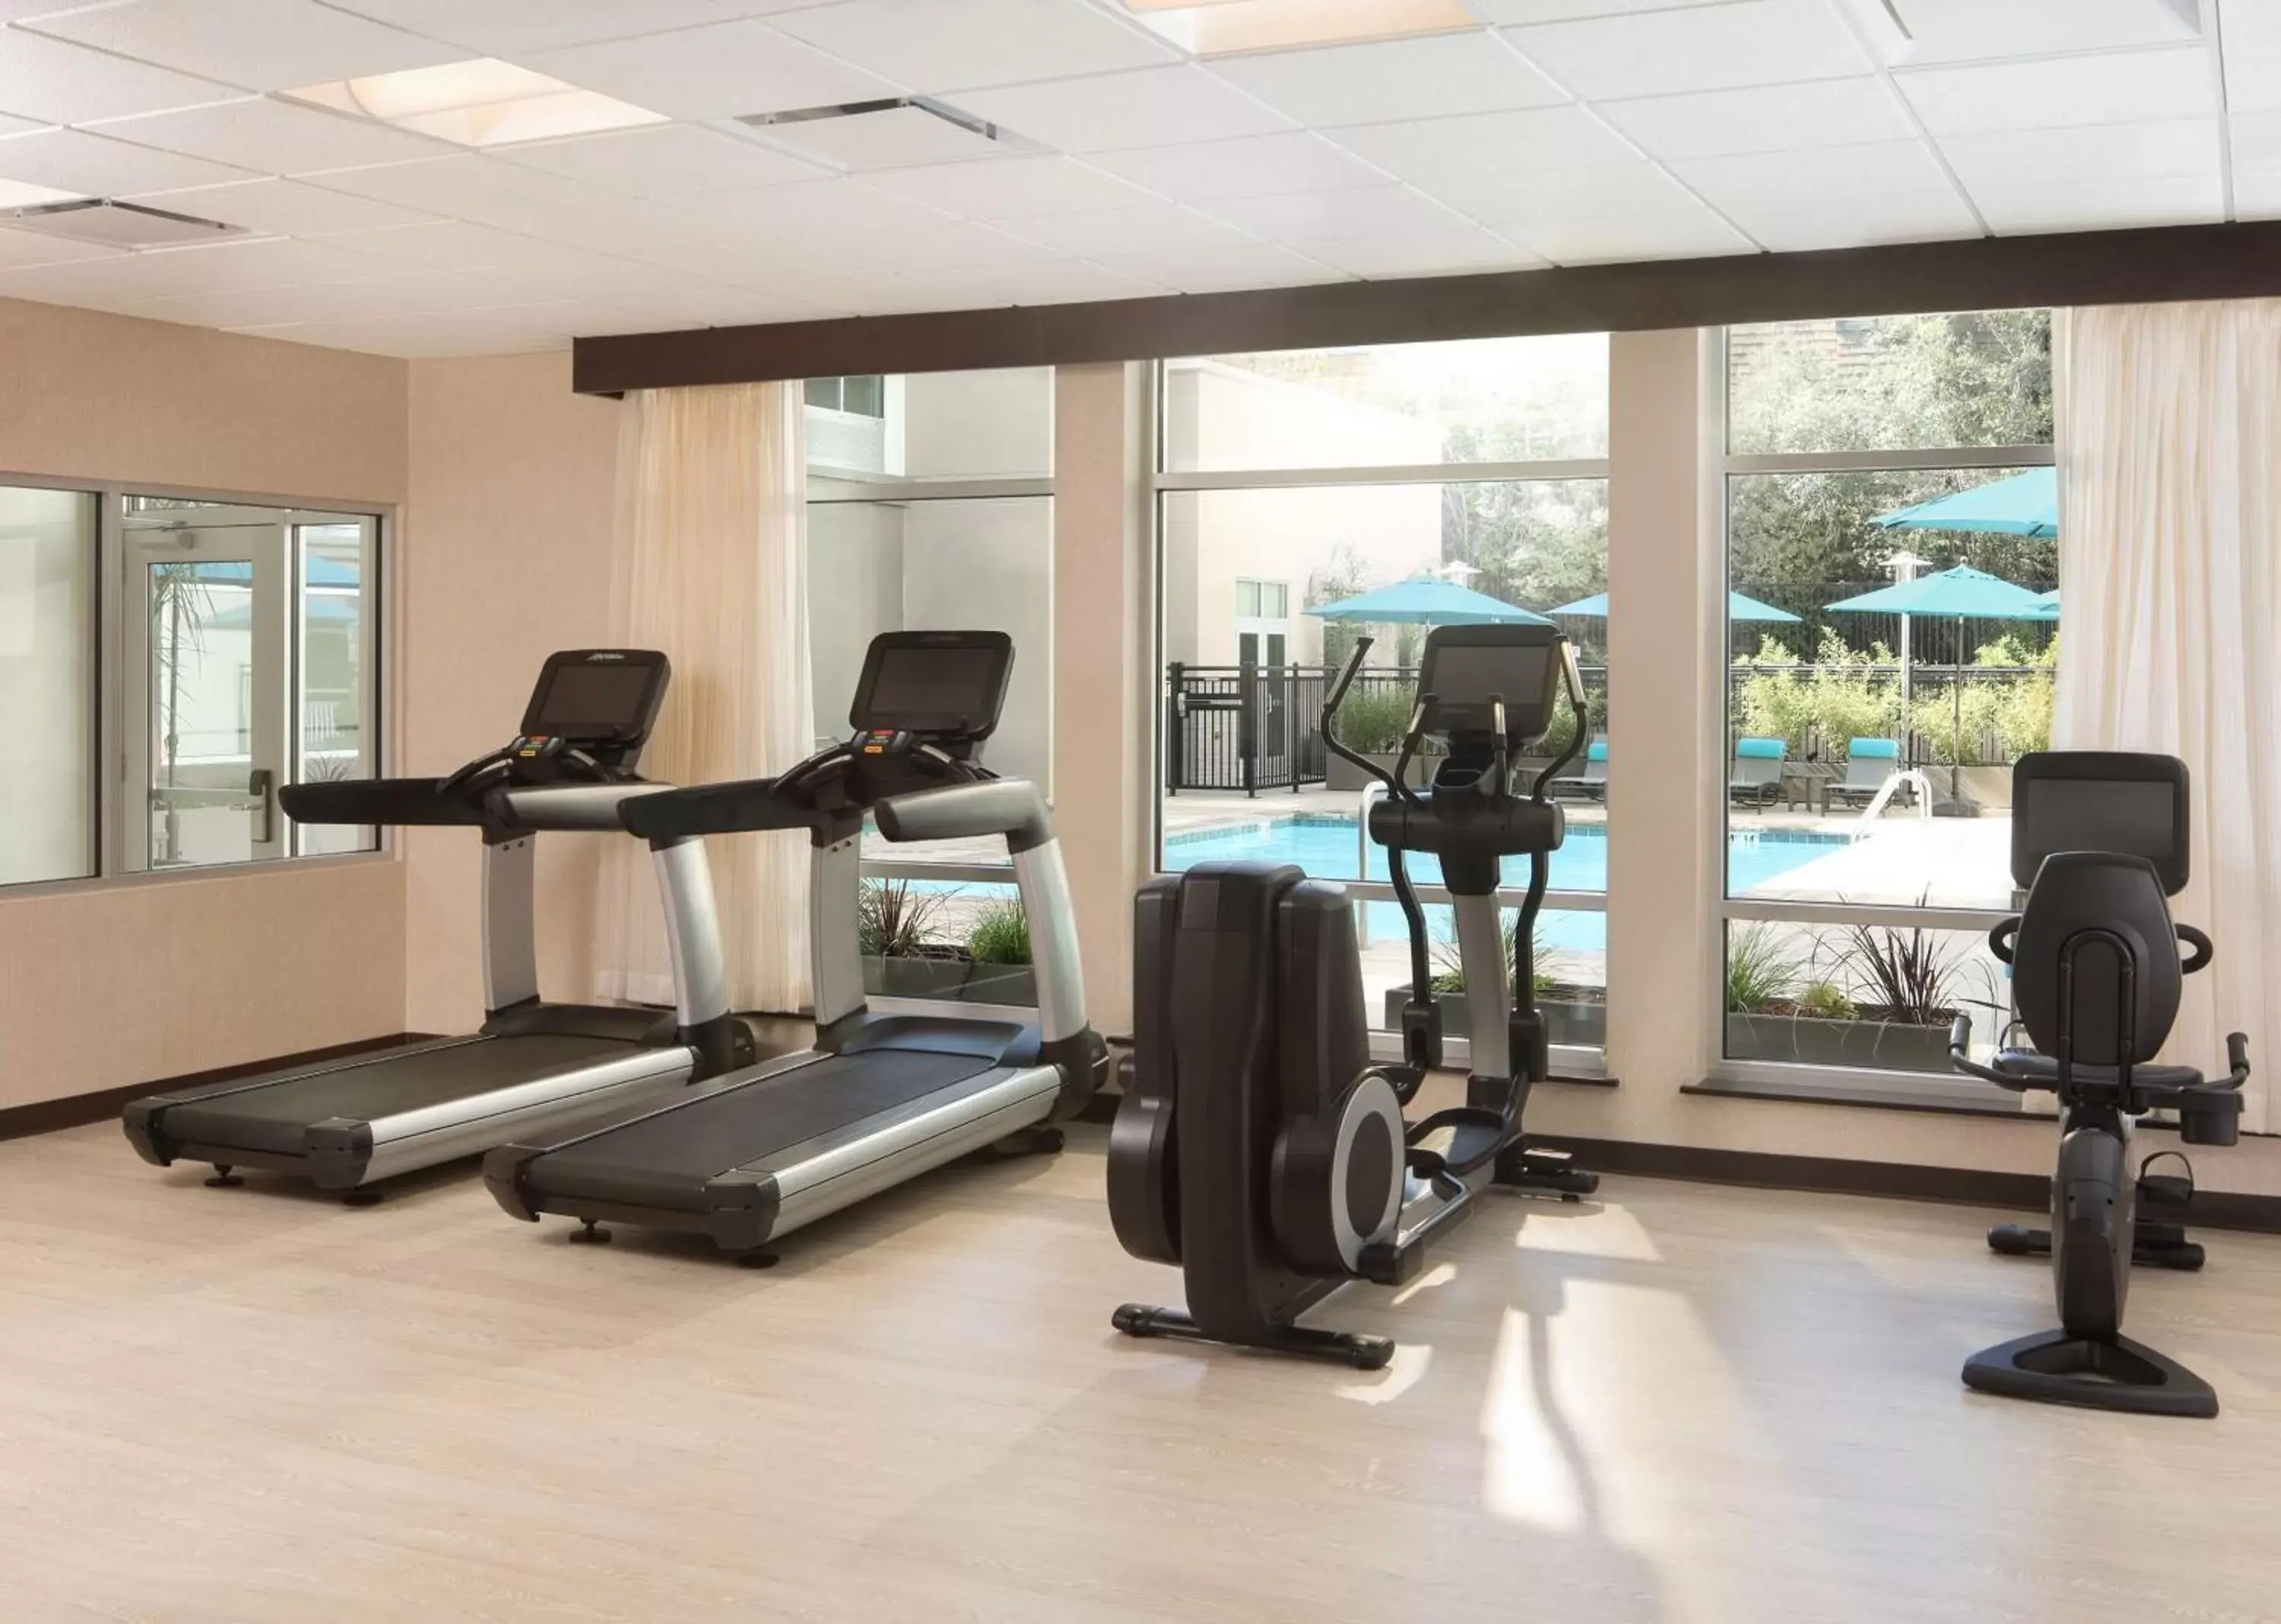 Fitness centre/facilities, Fitness Center/Facilities in Hyatt Place Santa Cruz